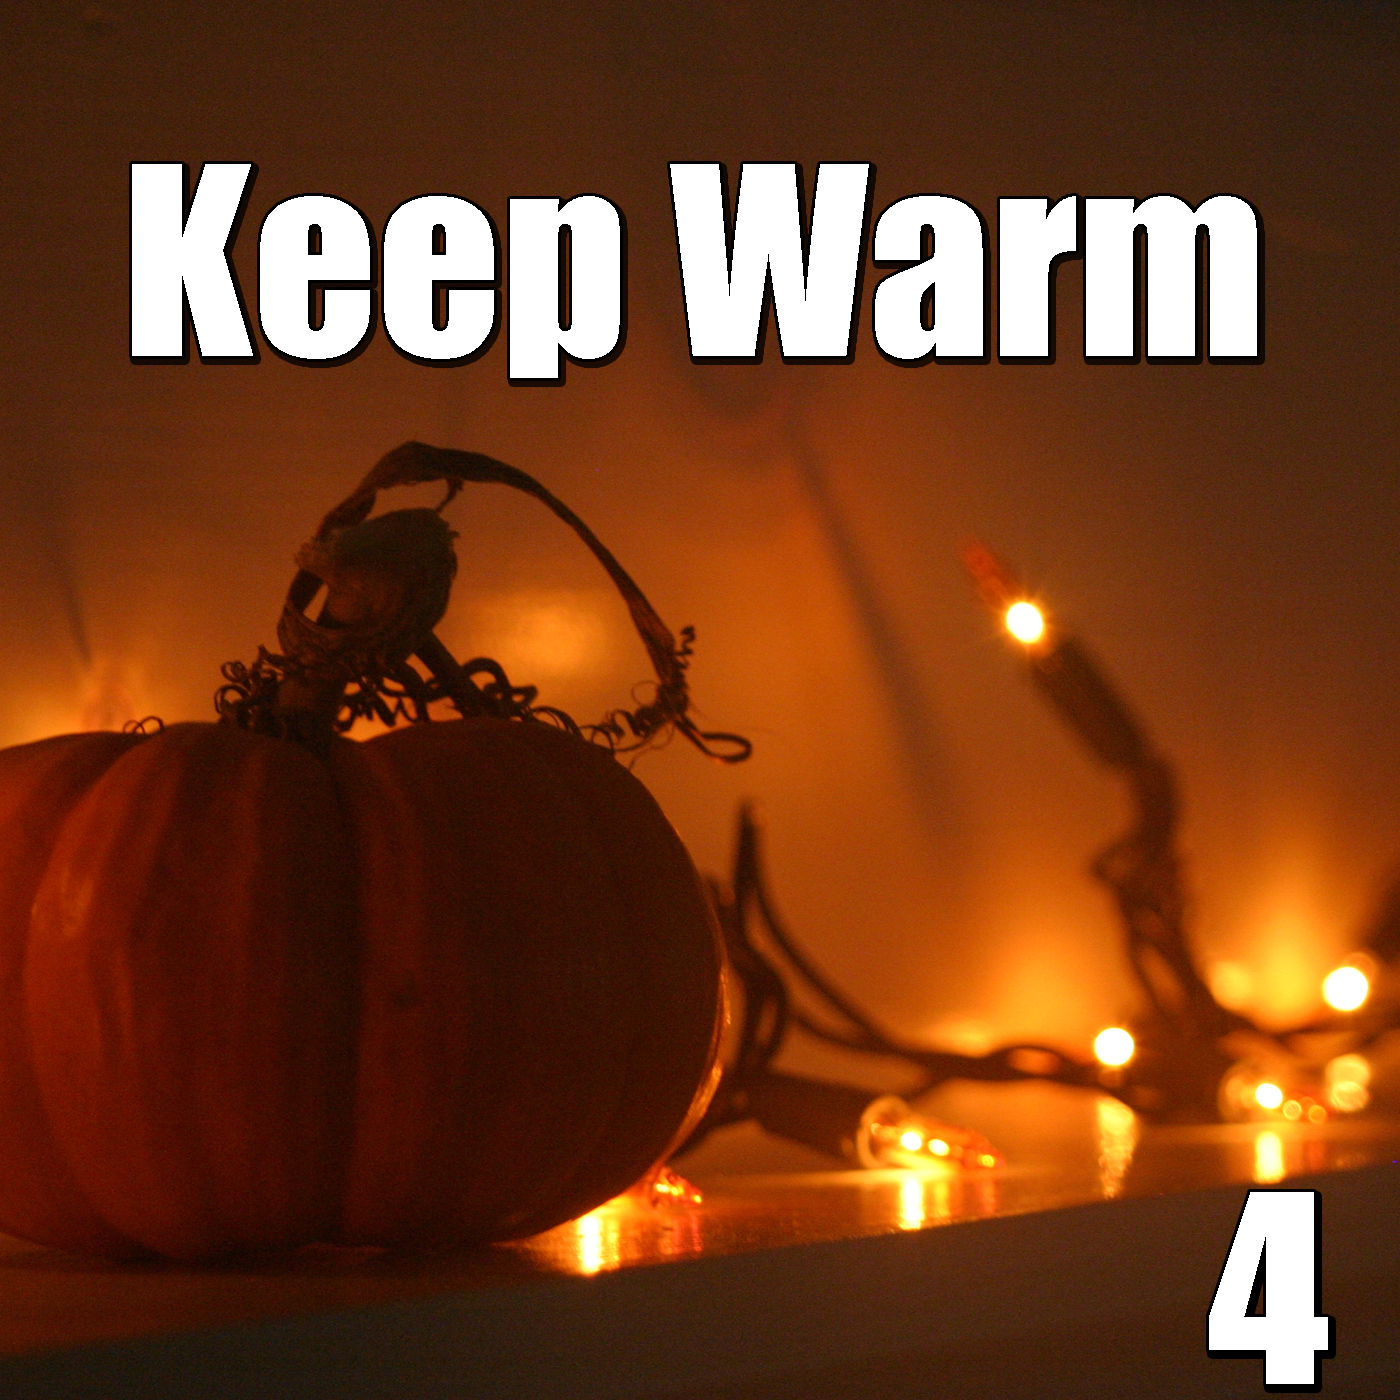 Keep Warm, Vol.4